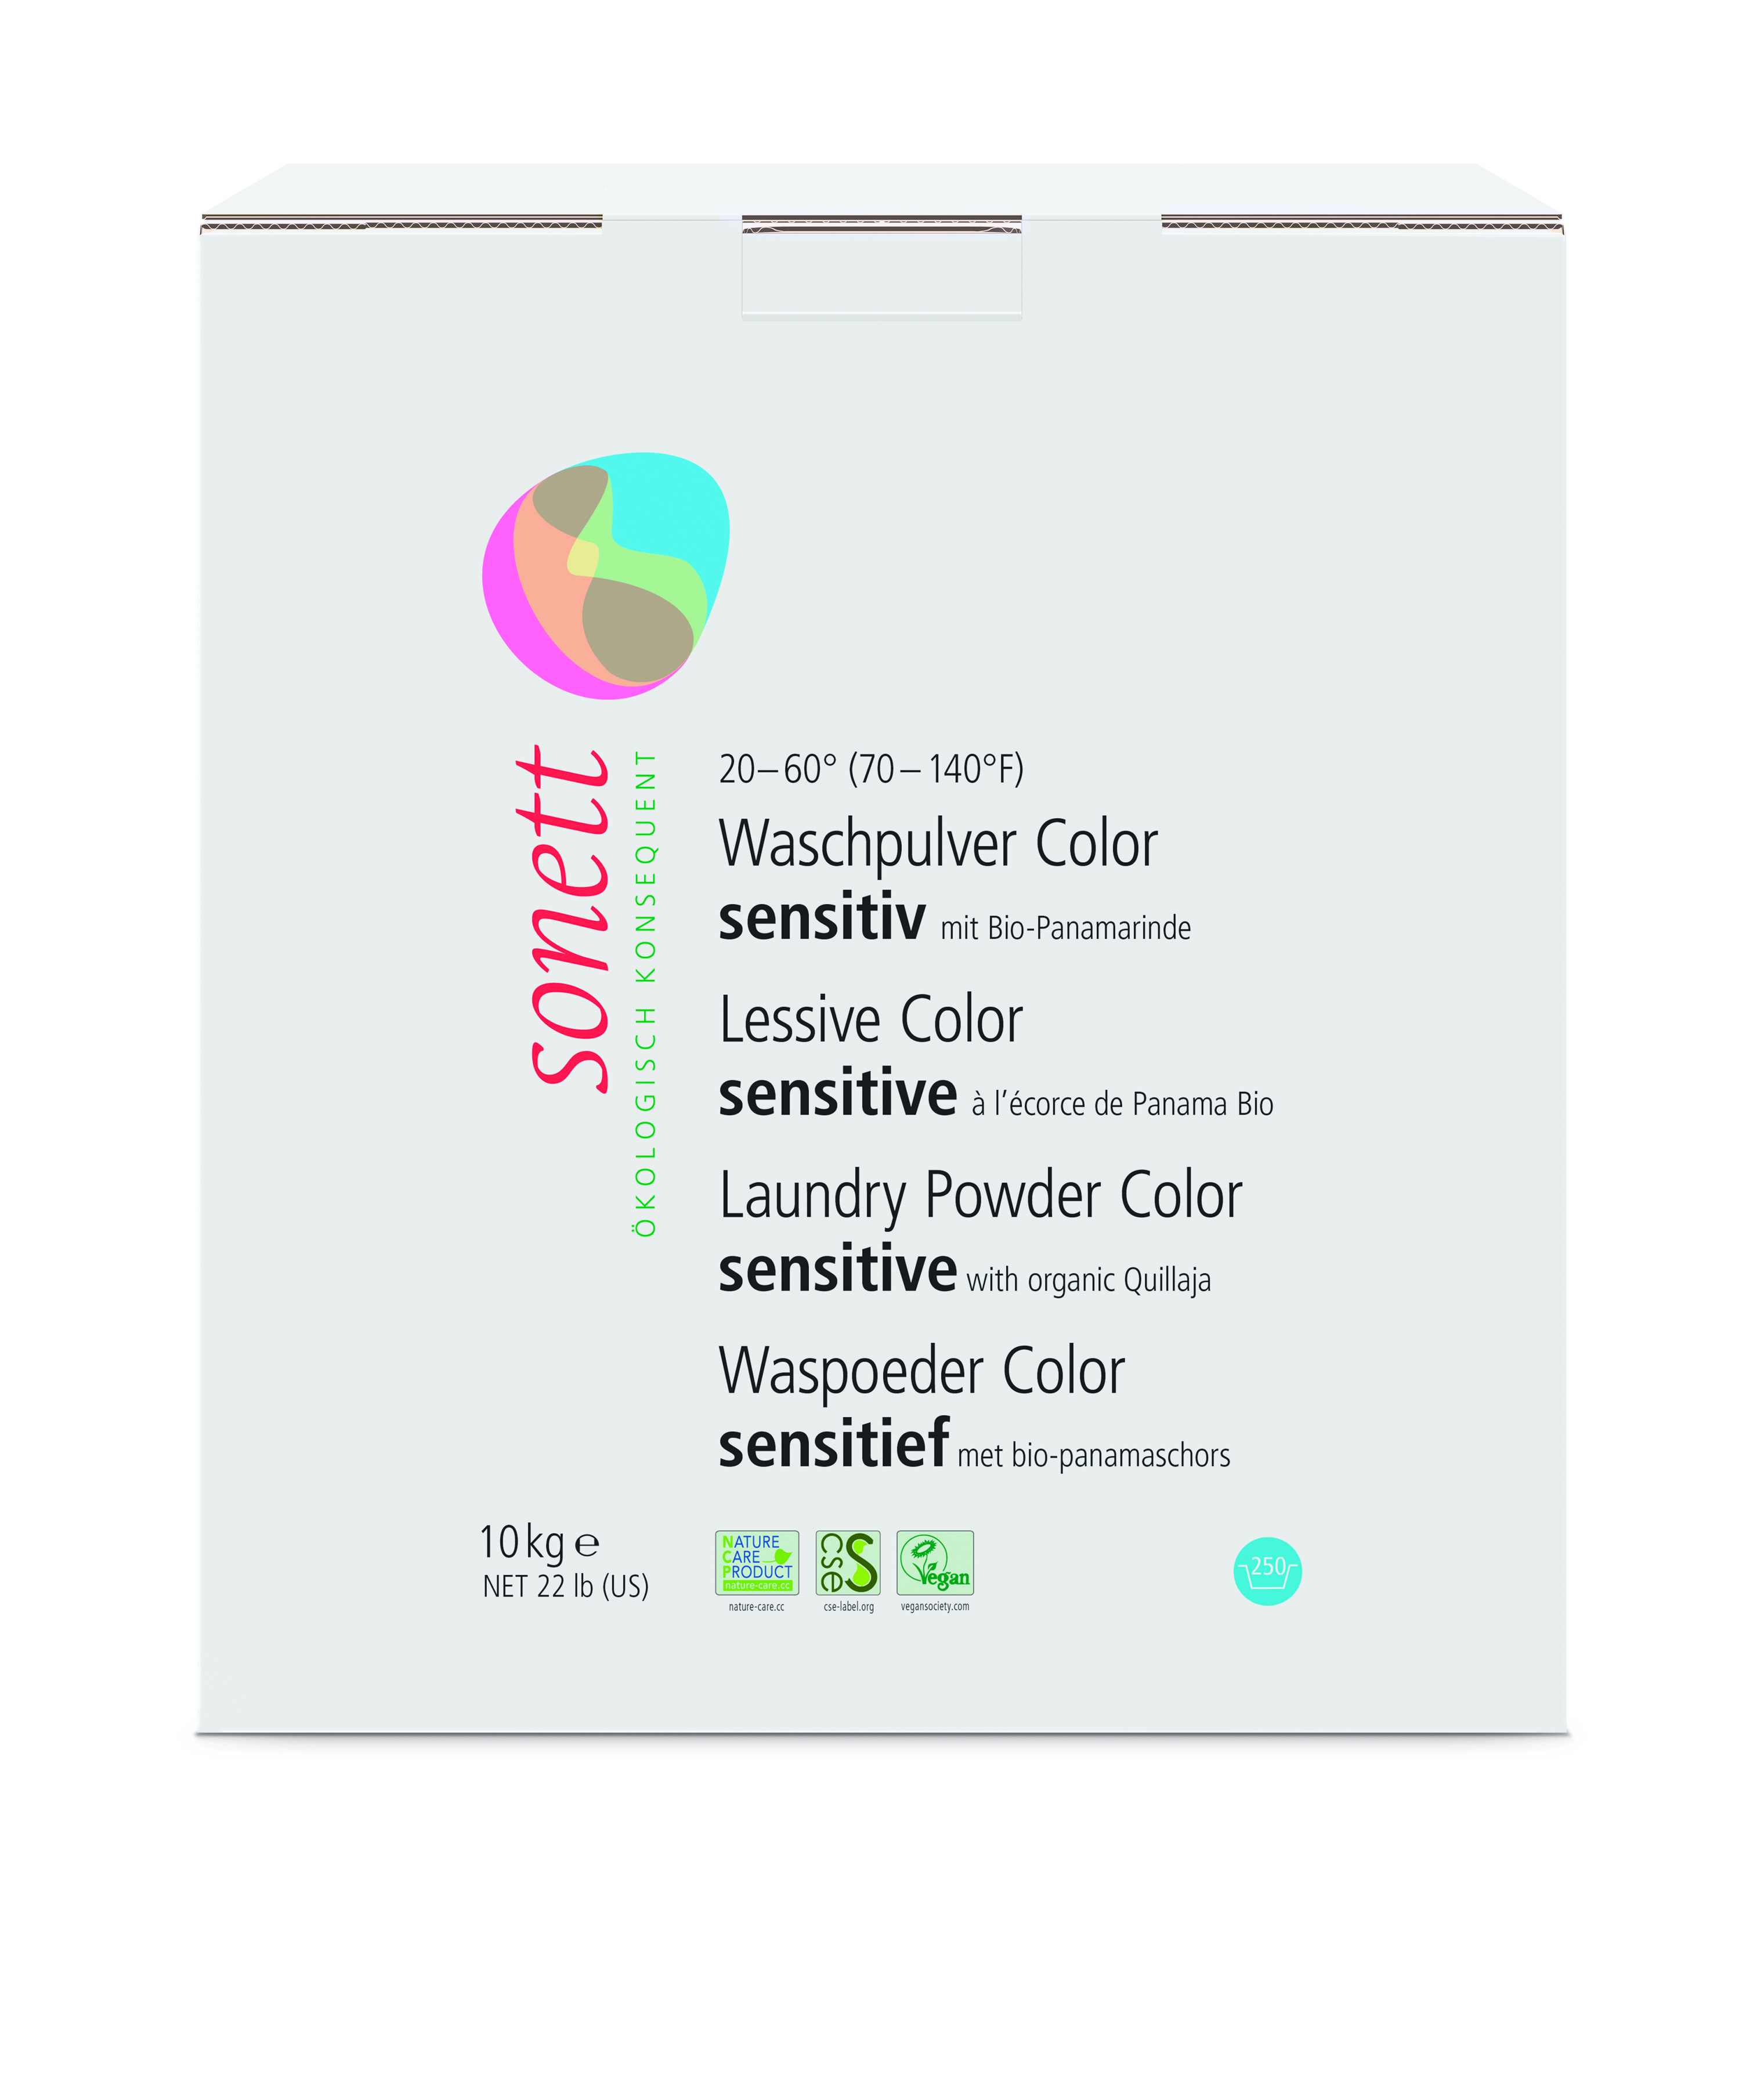 Sonett Waschpulver Color Sensitiv